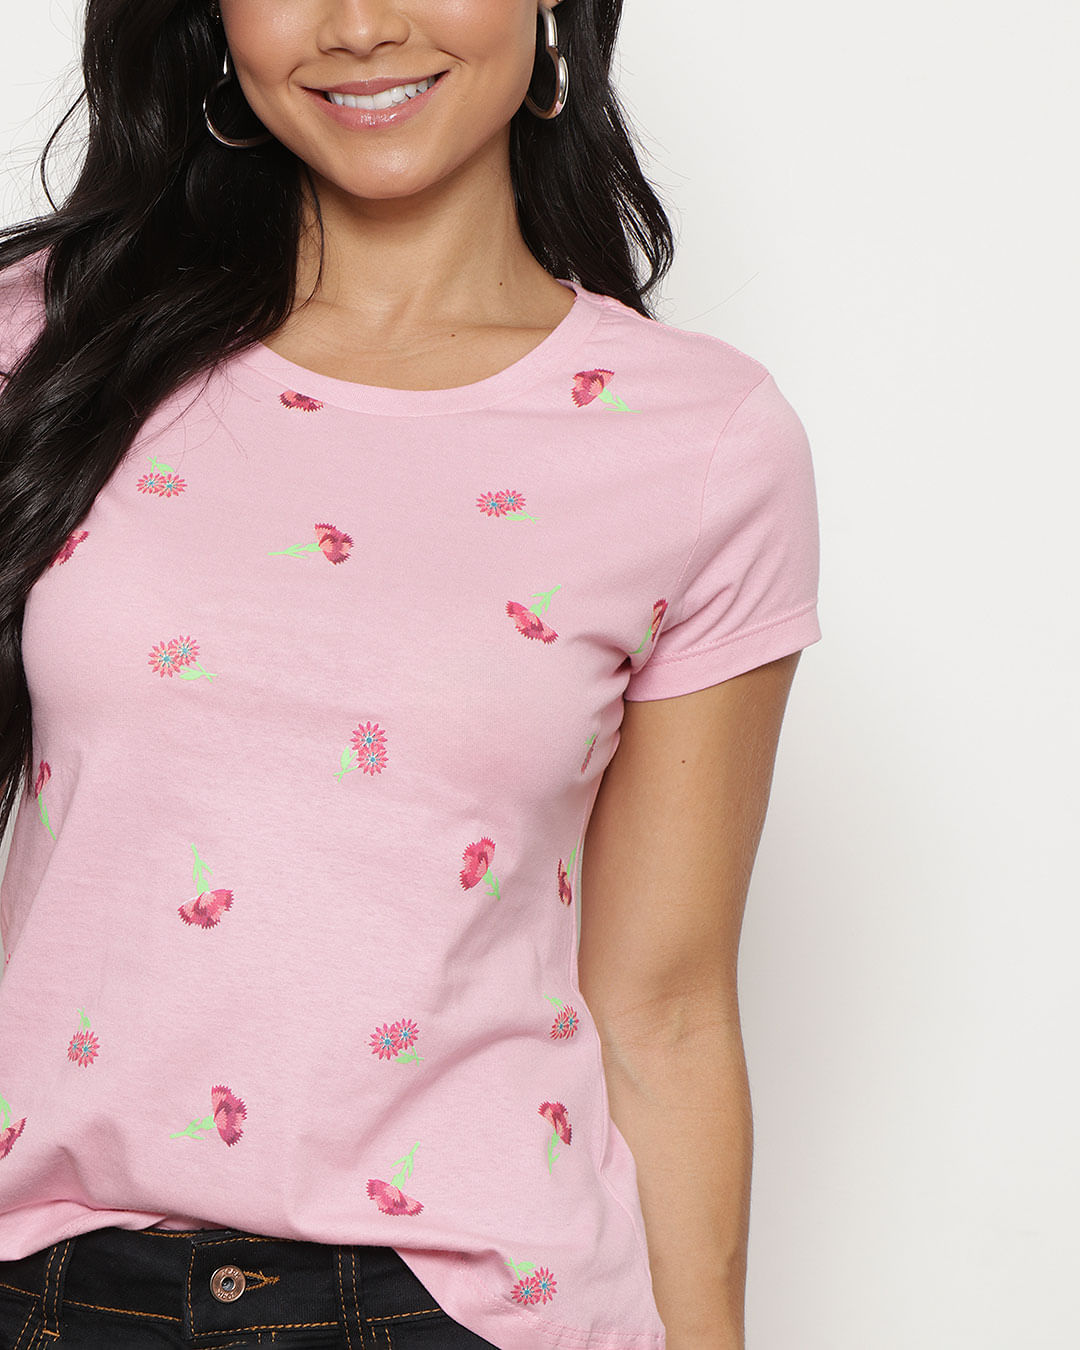 Camiseta-Full-Print-Flores-Rosa-M8---Rosa-Claro